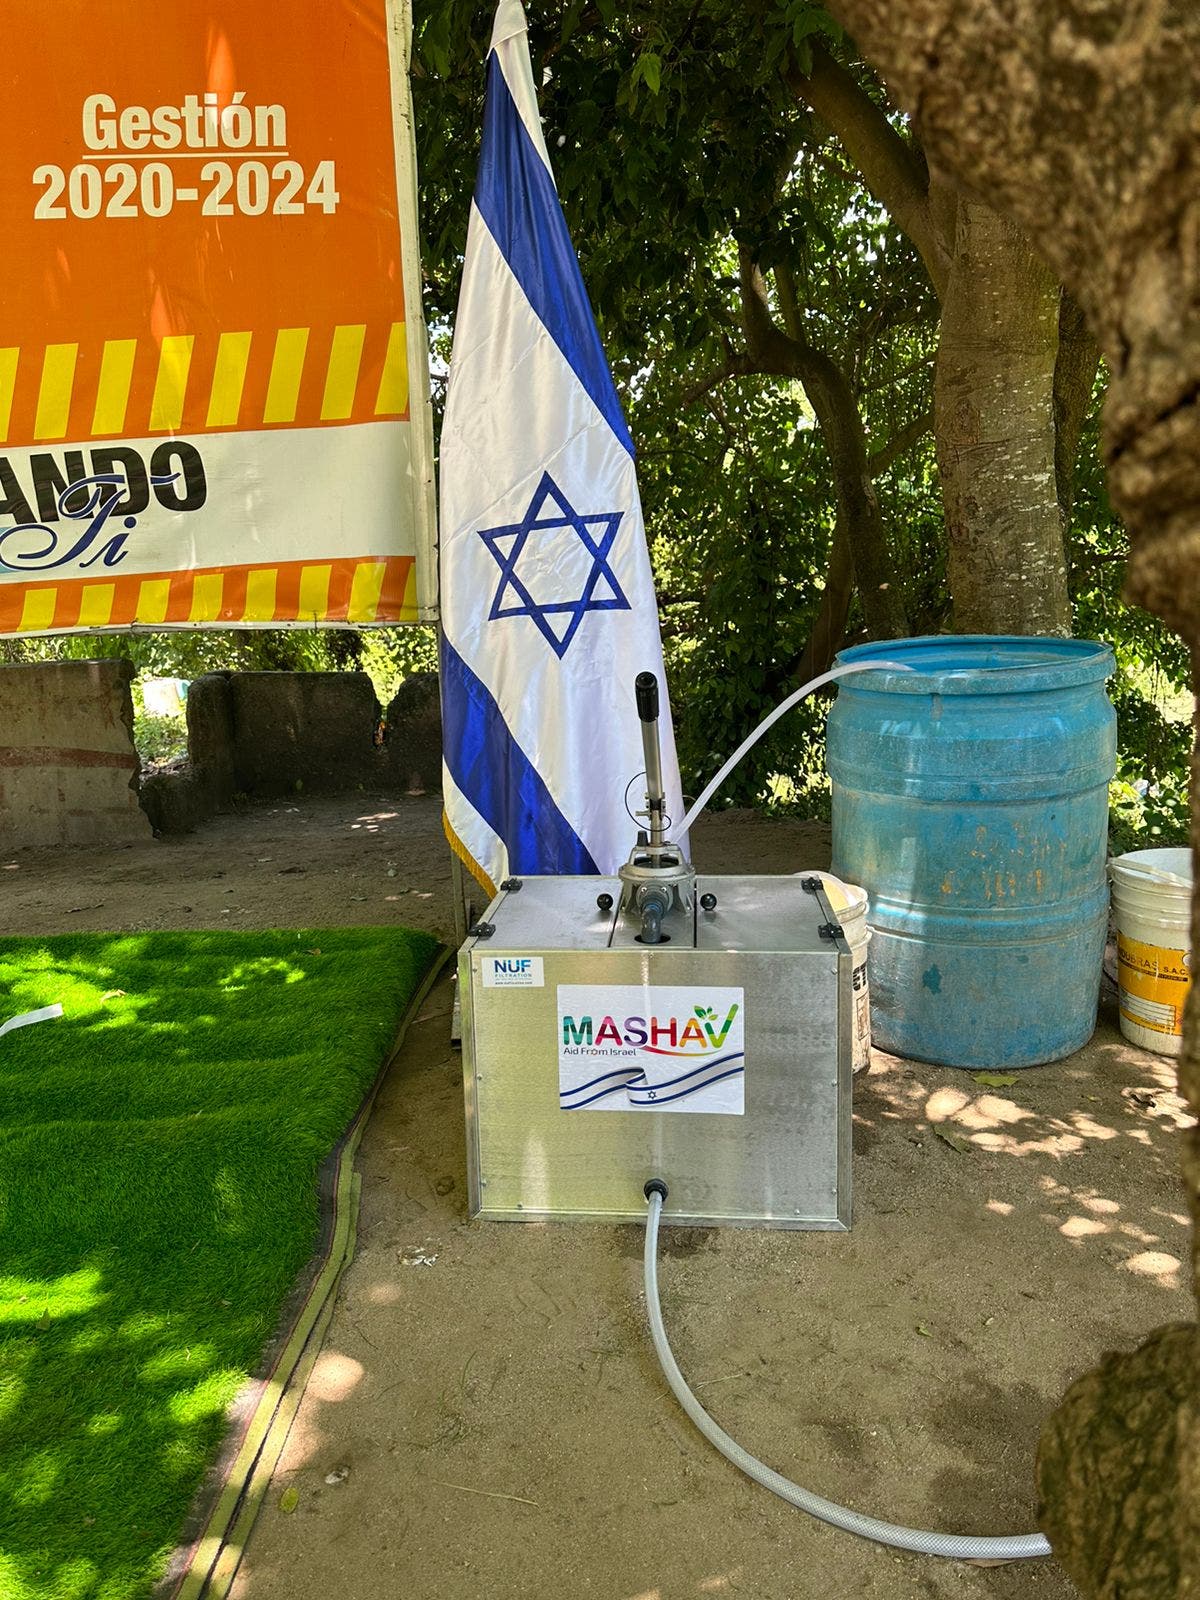 Embajada de Israel dona a RD dispositivos que filtra agua contaminada